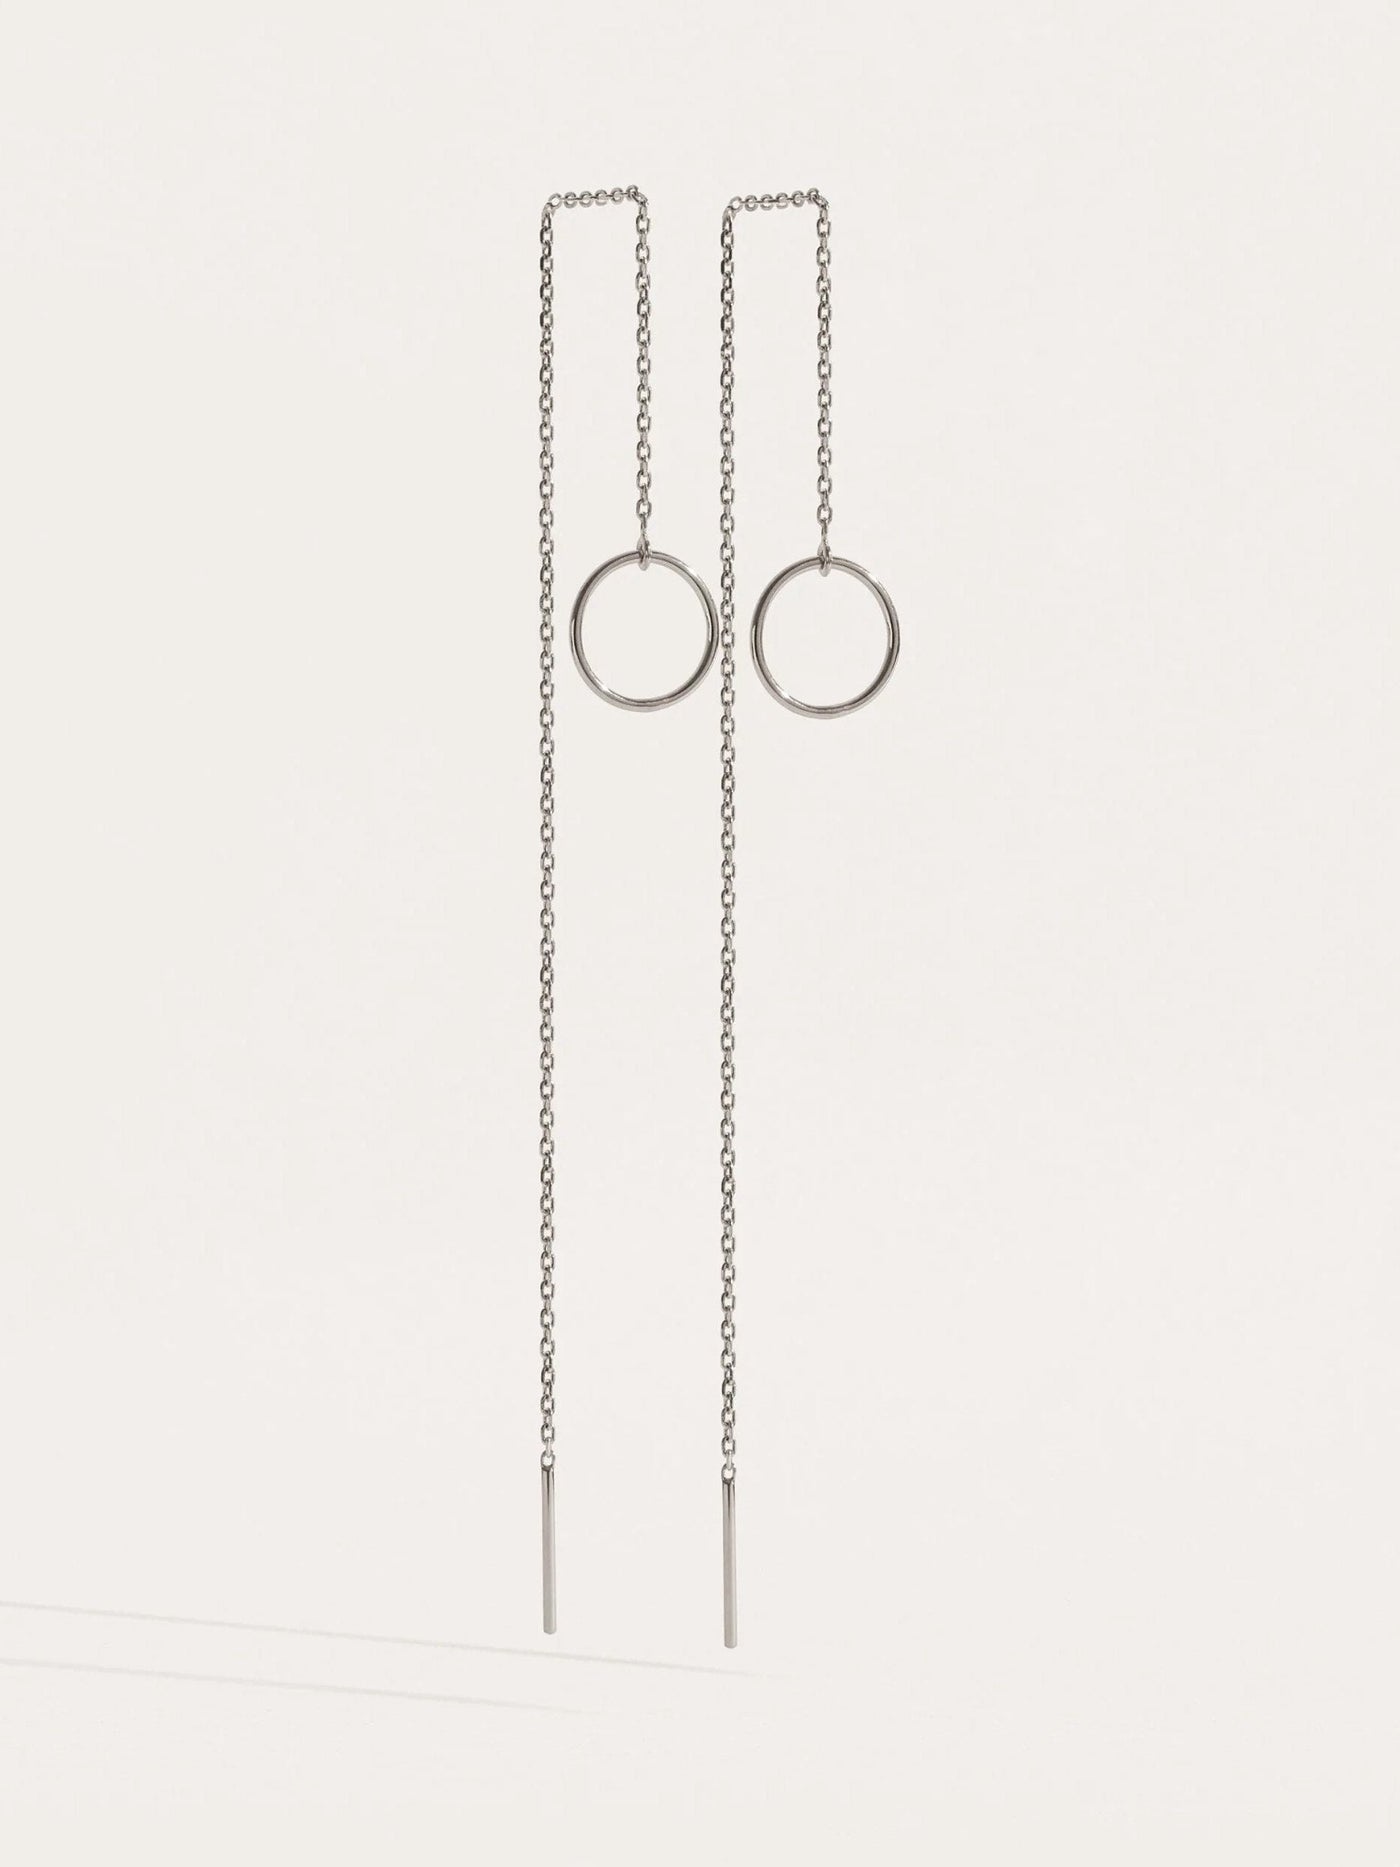 Long Threader Earrings - 925 Sterling SilverankorBackUpItemsLunai Jewelry